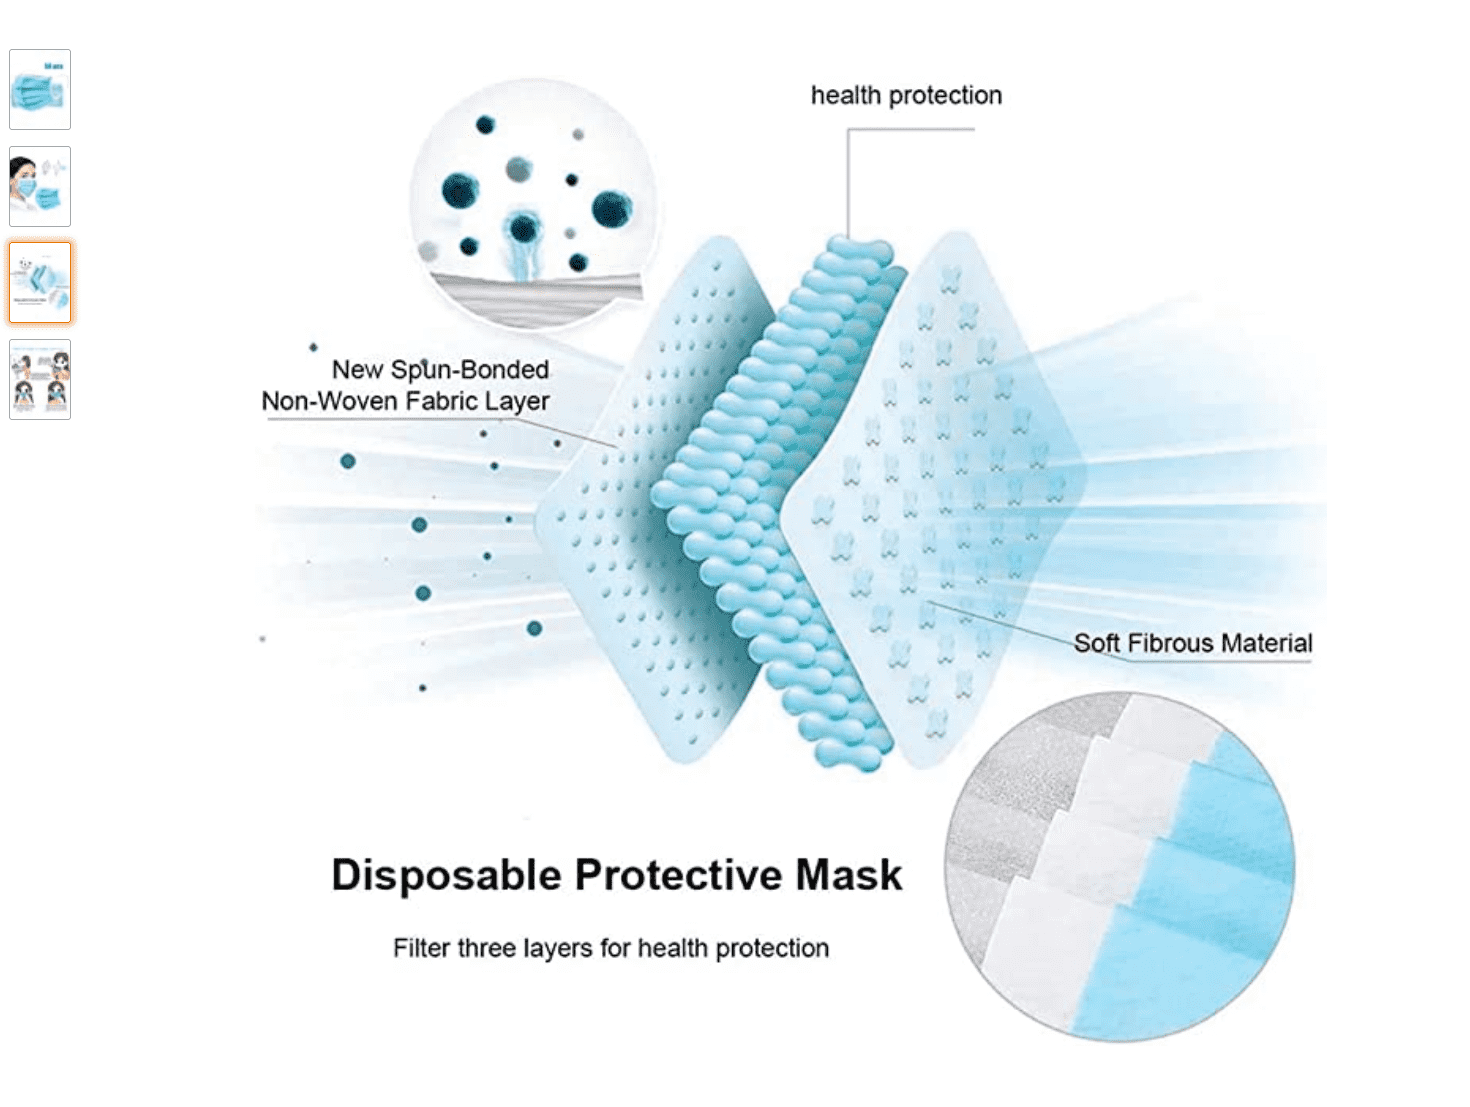 Top Selling Coronavirus Masks on Amazon [updated]